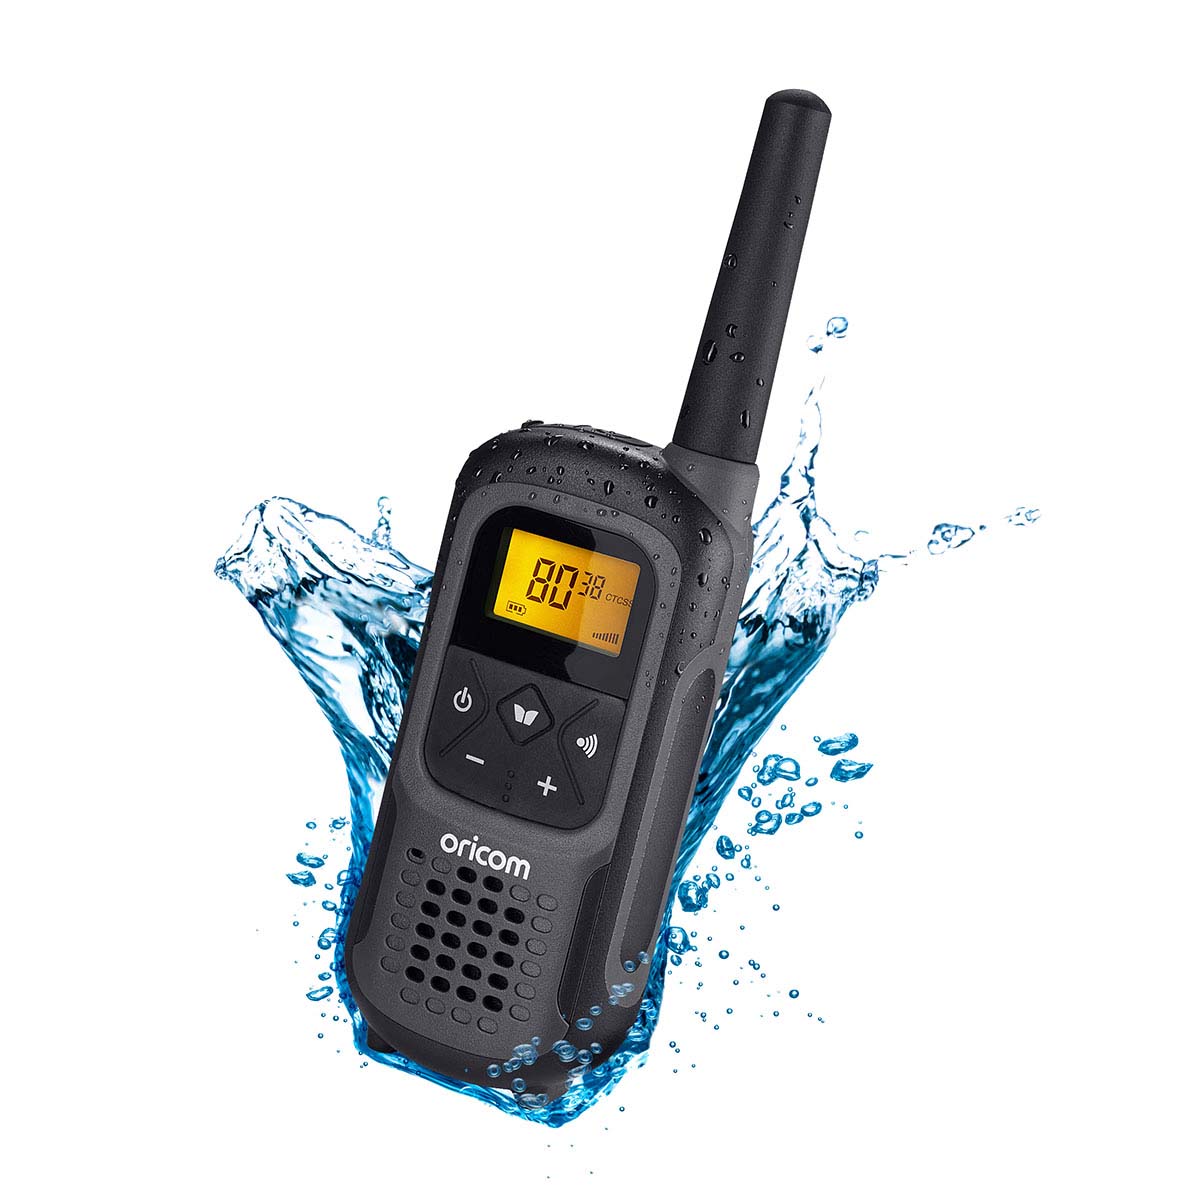 2 watt Waterproof Handheld UHF CB Radio